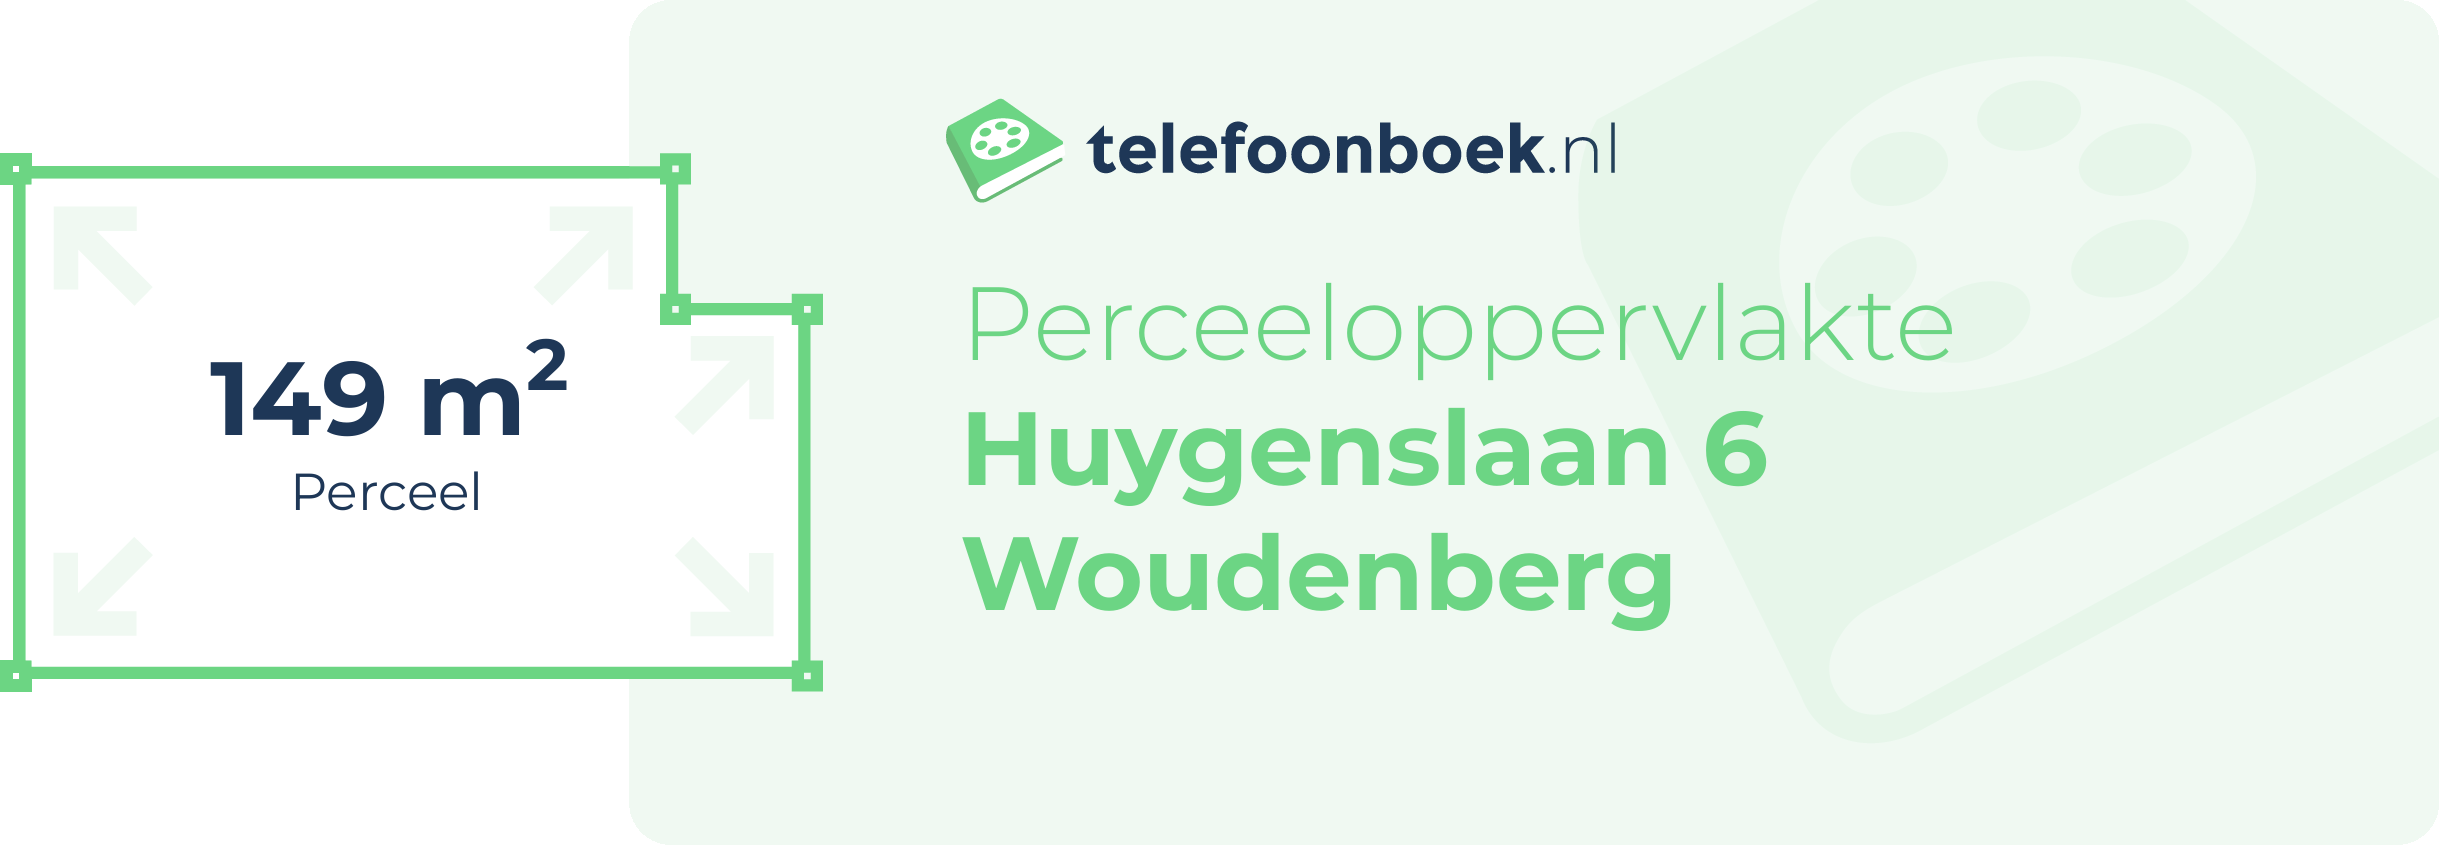 Perceeloppervlakte Huygenslaan 6 Woudenberg